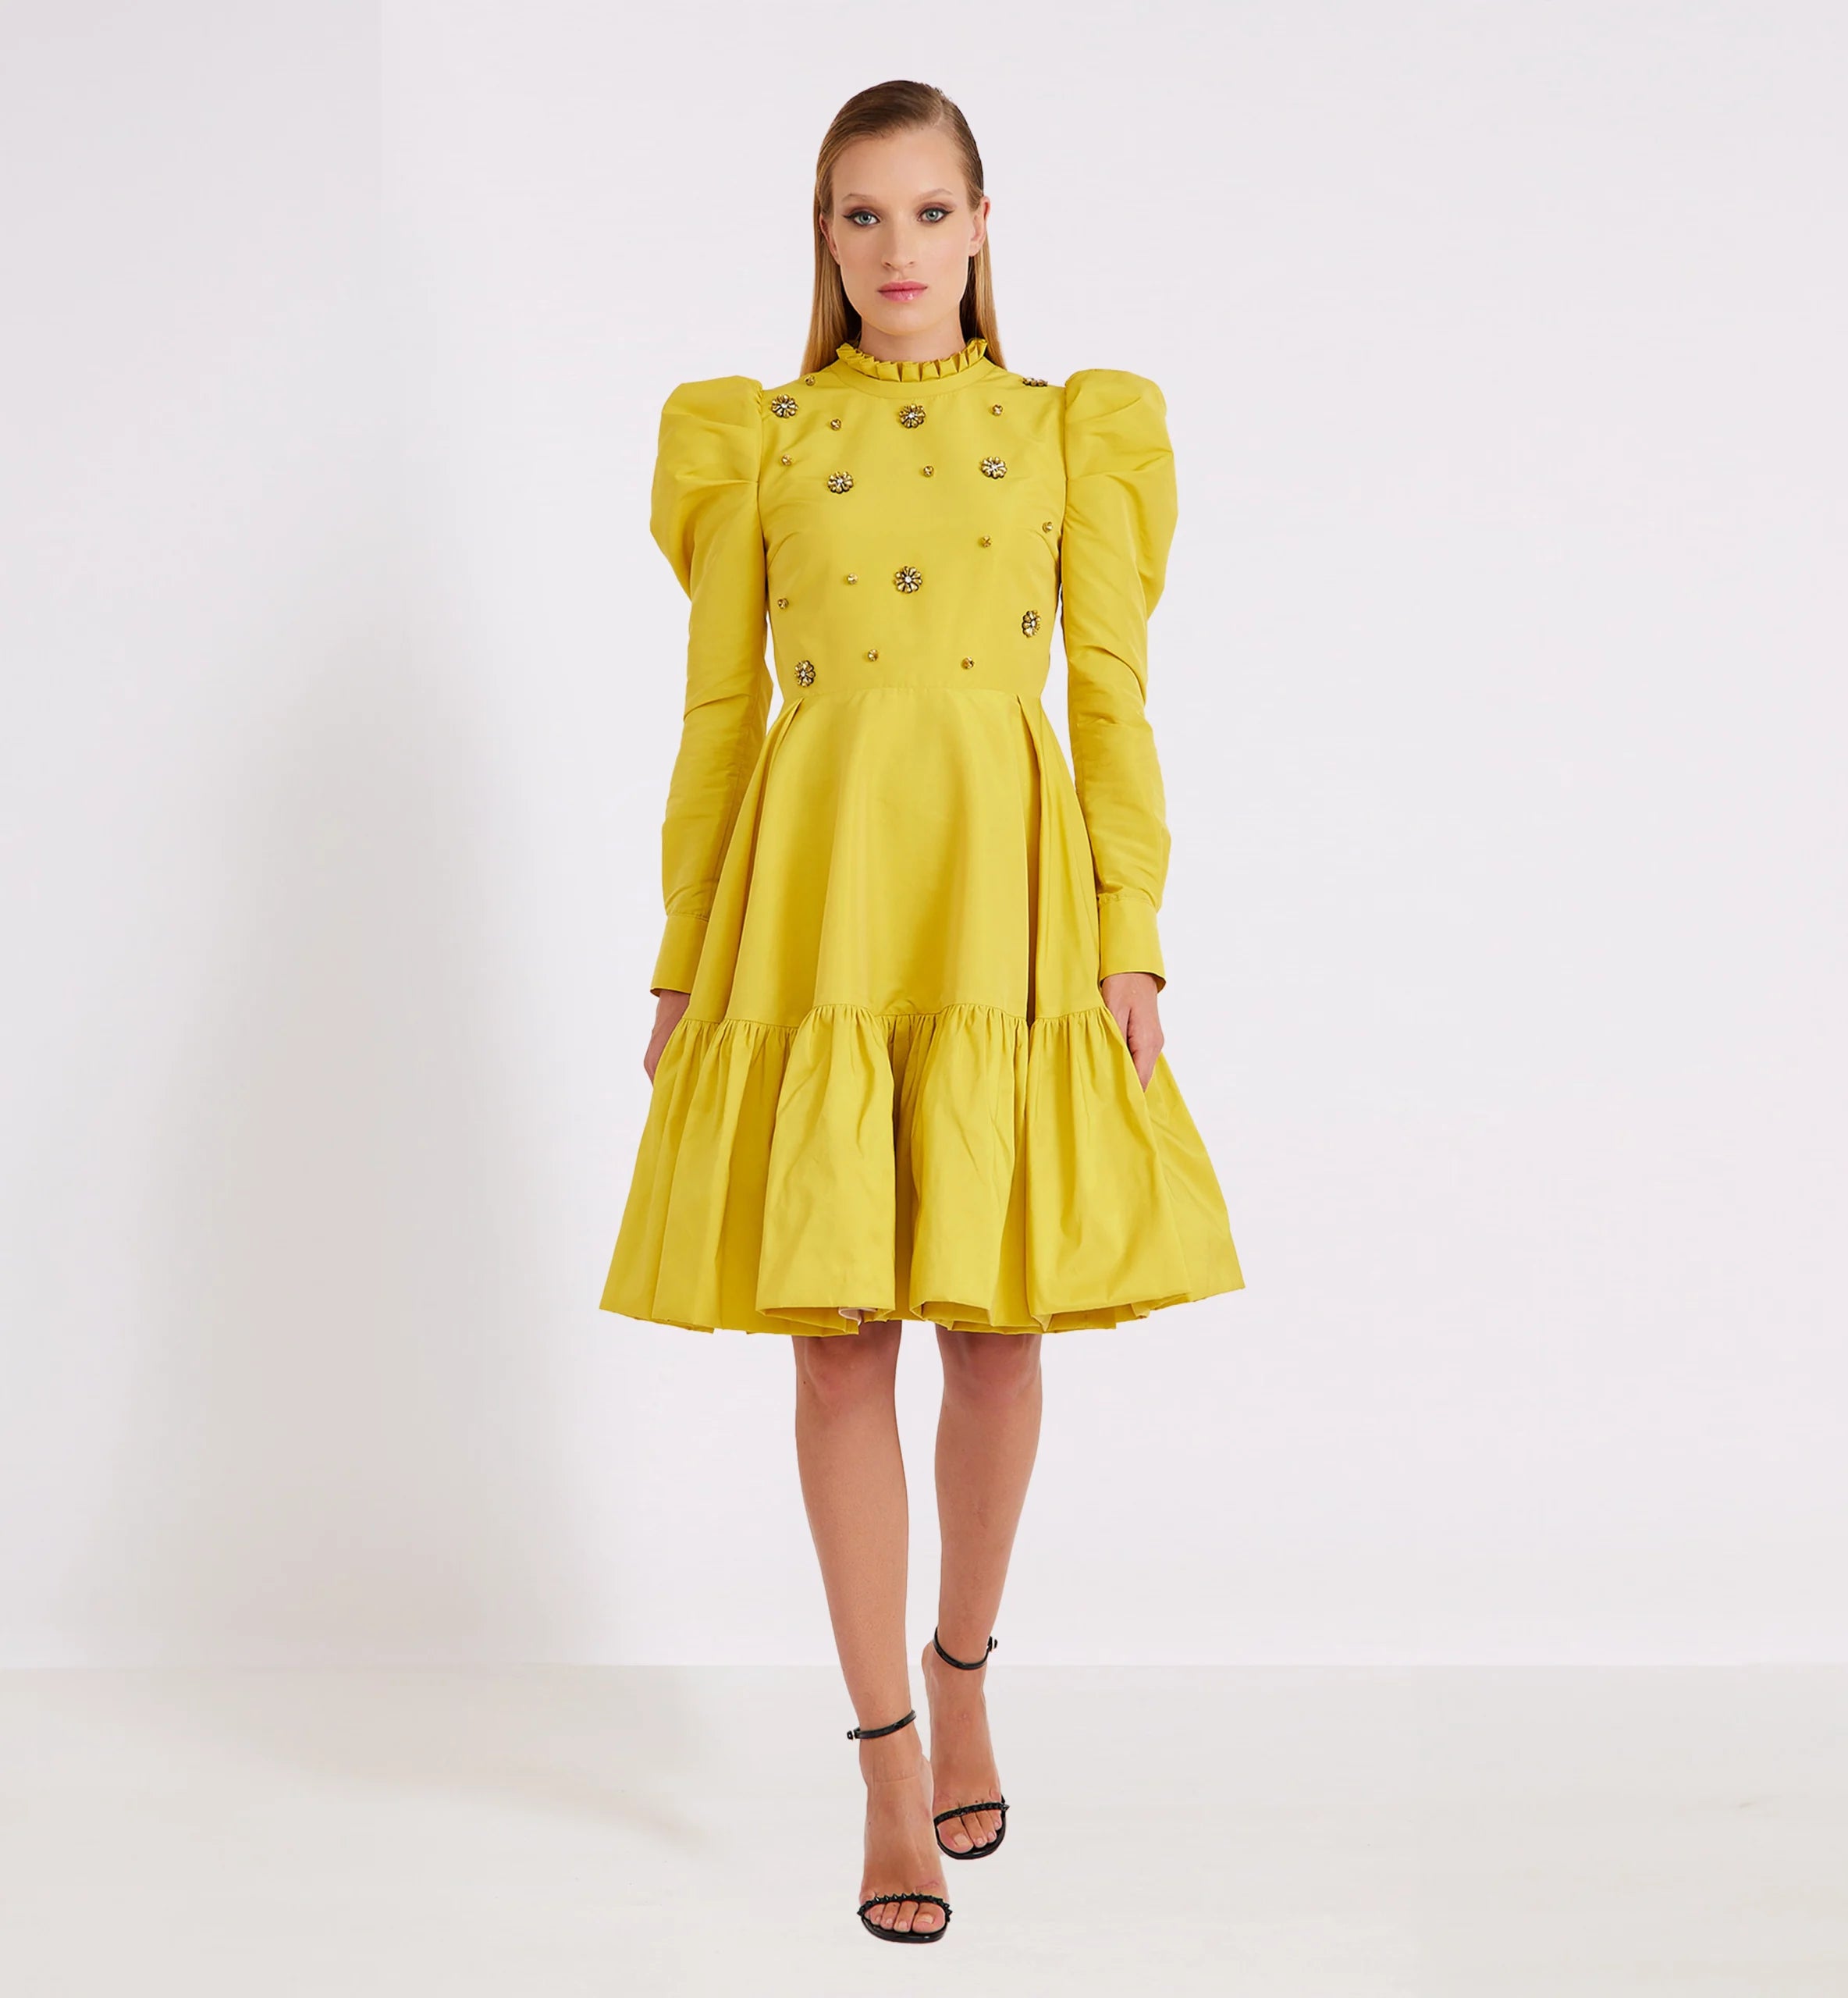 Taffeta and Diamond Dress in Yellow